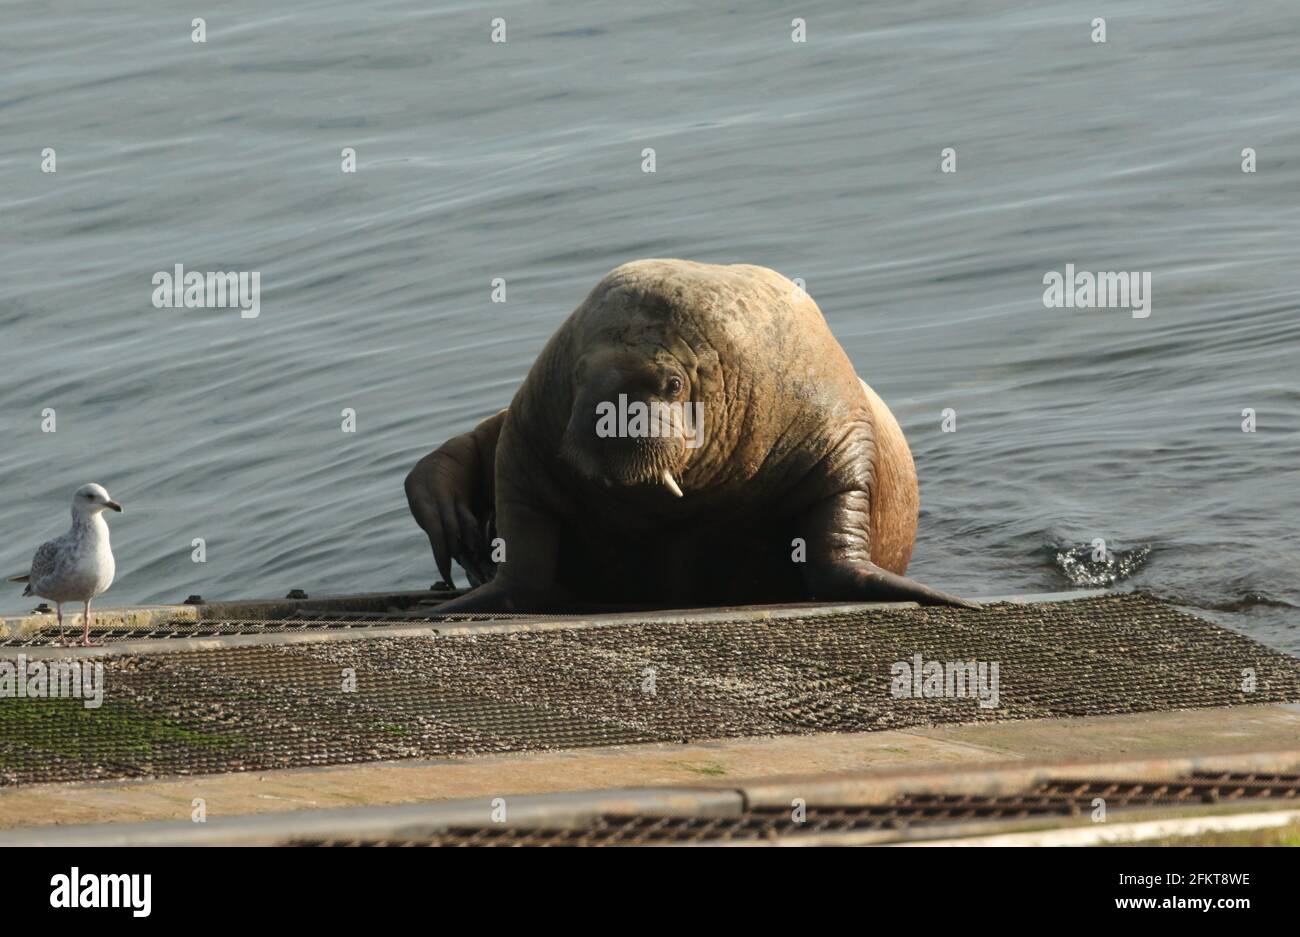 Ein seltener Walrus, Odobenus rosmarus, der auf der Rampe der Tenby Rettungsbootstation in Tenby, Pembrokeshire, Wales, liegt. Stockfoto